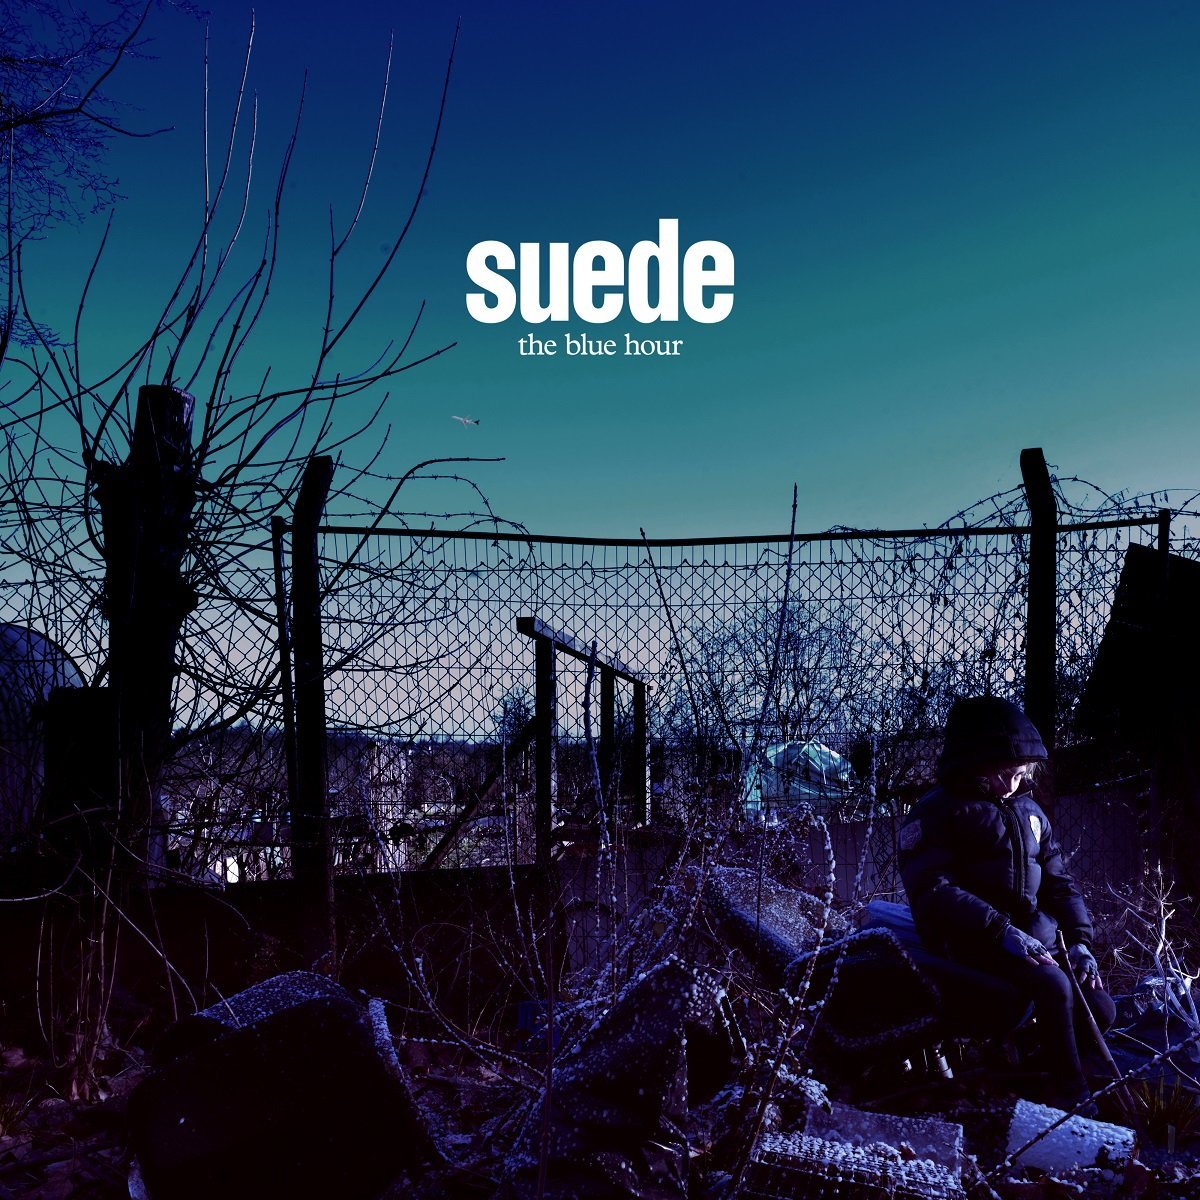 Suede - premiera nowego albumu The Blue Hour 